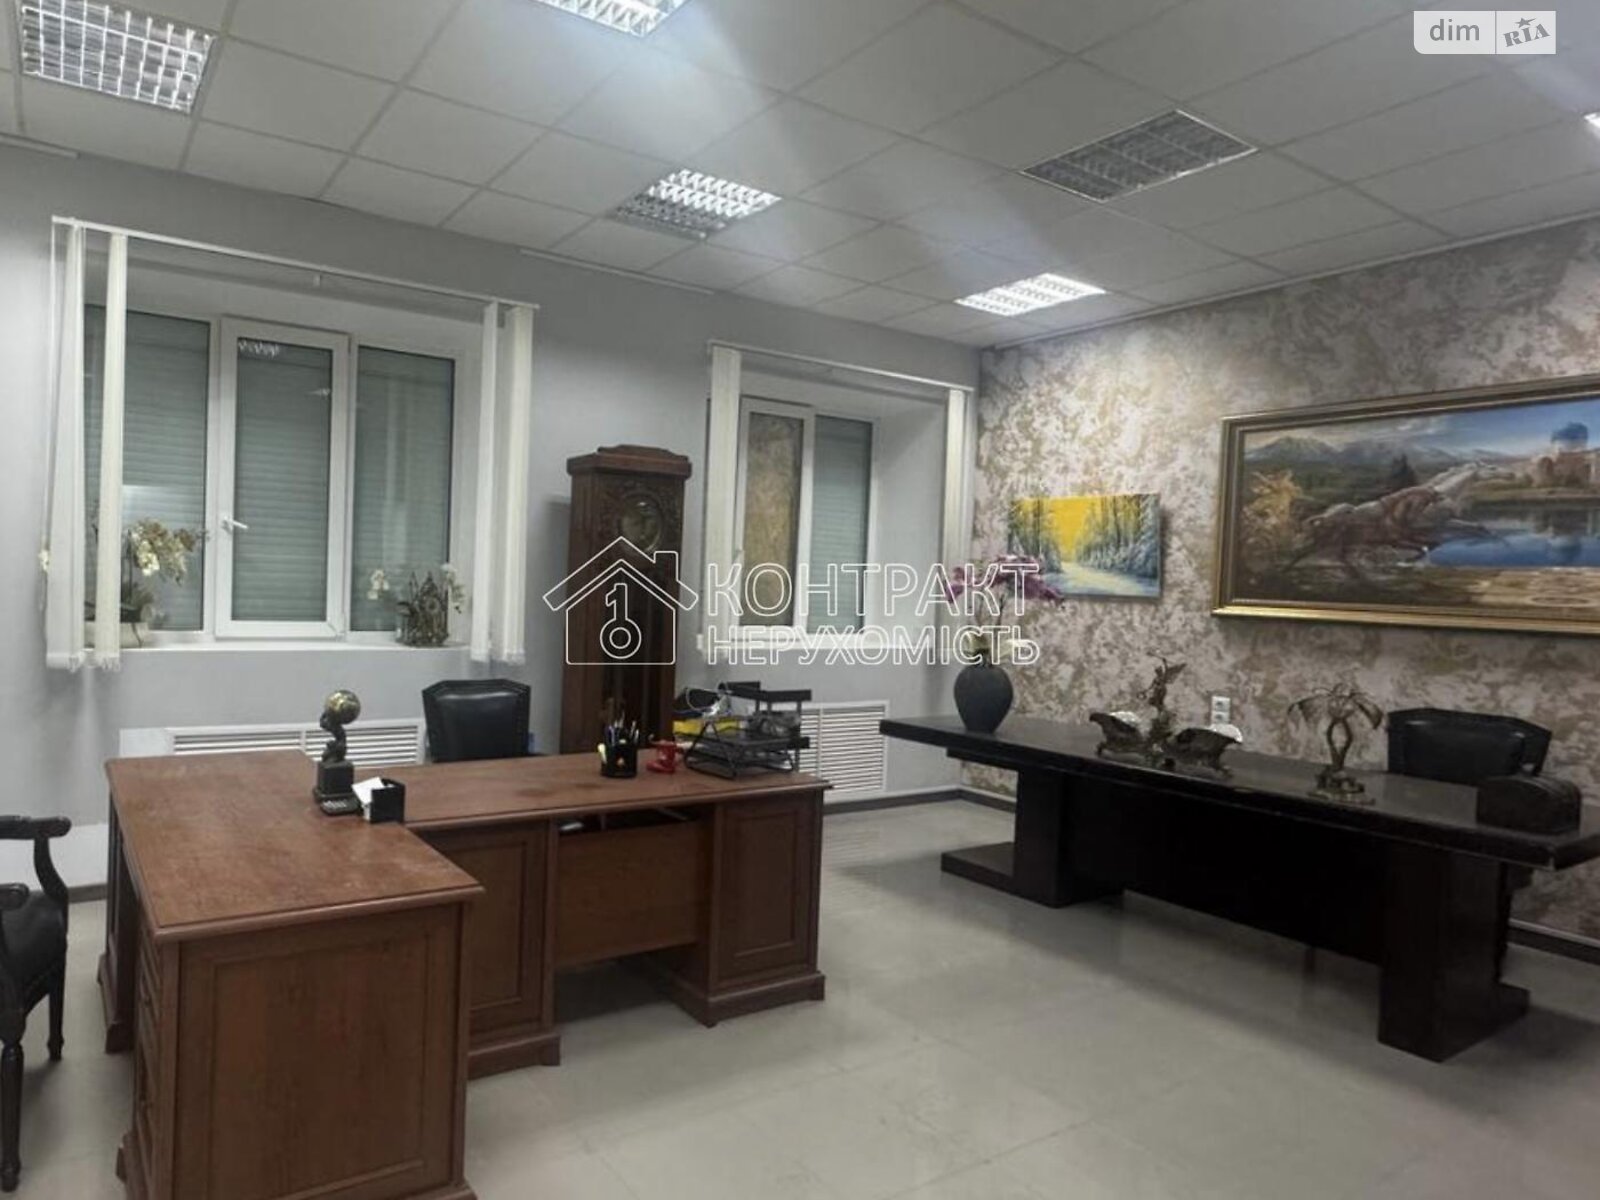 Аренда офисного помещения в Харькове, Максимилиановская улица 7, помещений -, этаж - 1 фото 1